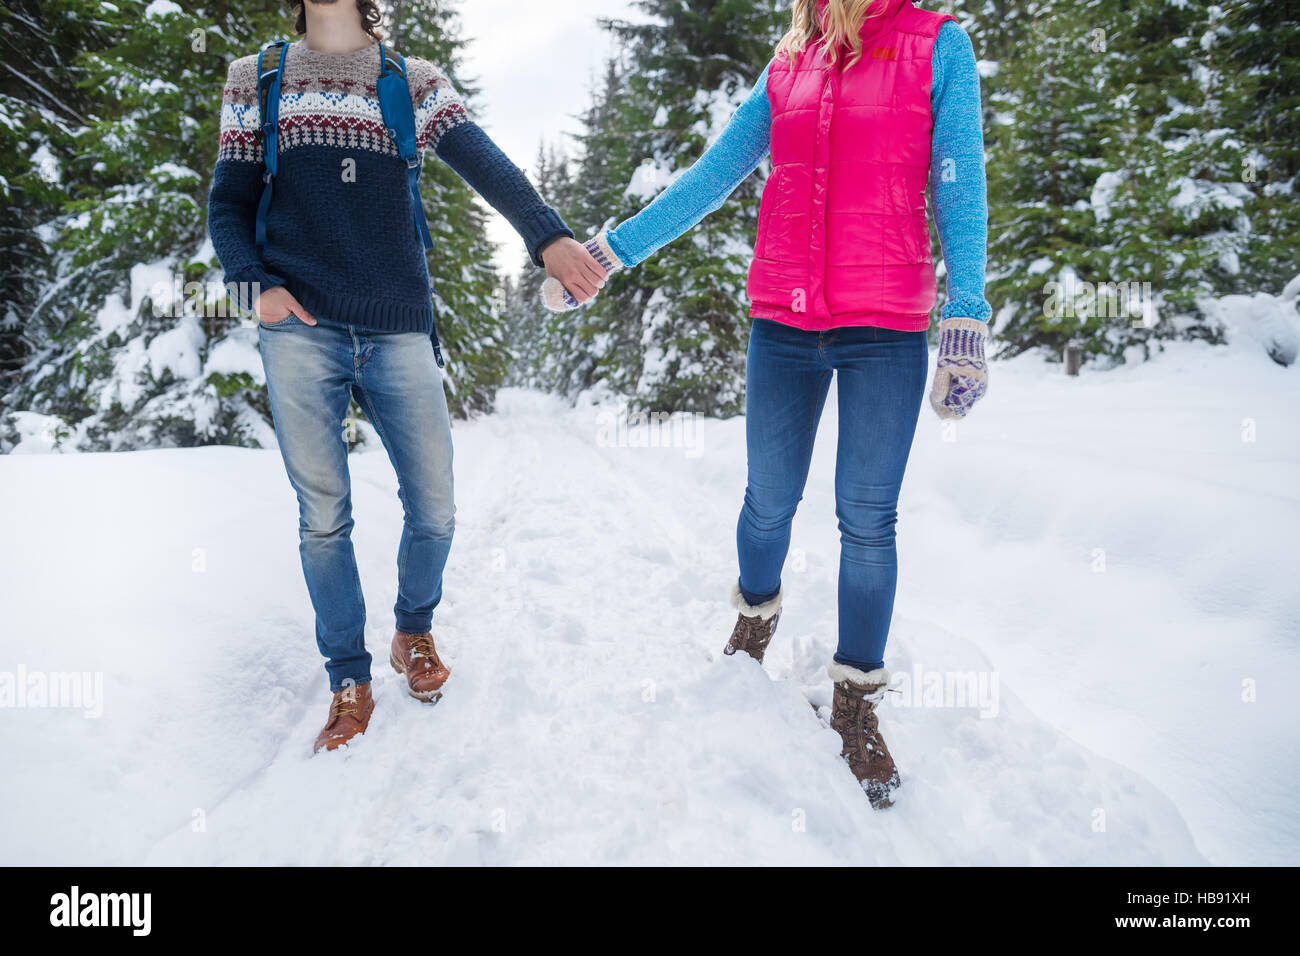 Walking snow rum перевод. Держаться за руки зима деревня. Видео где парень с девушкой в кроссовках идут по снегу за руки.